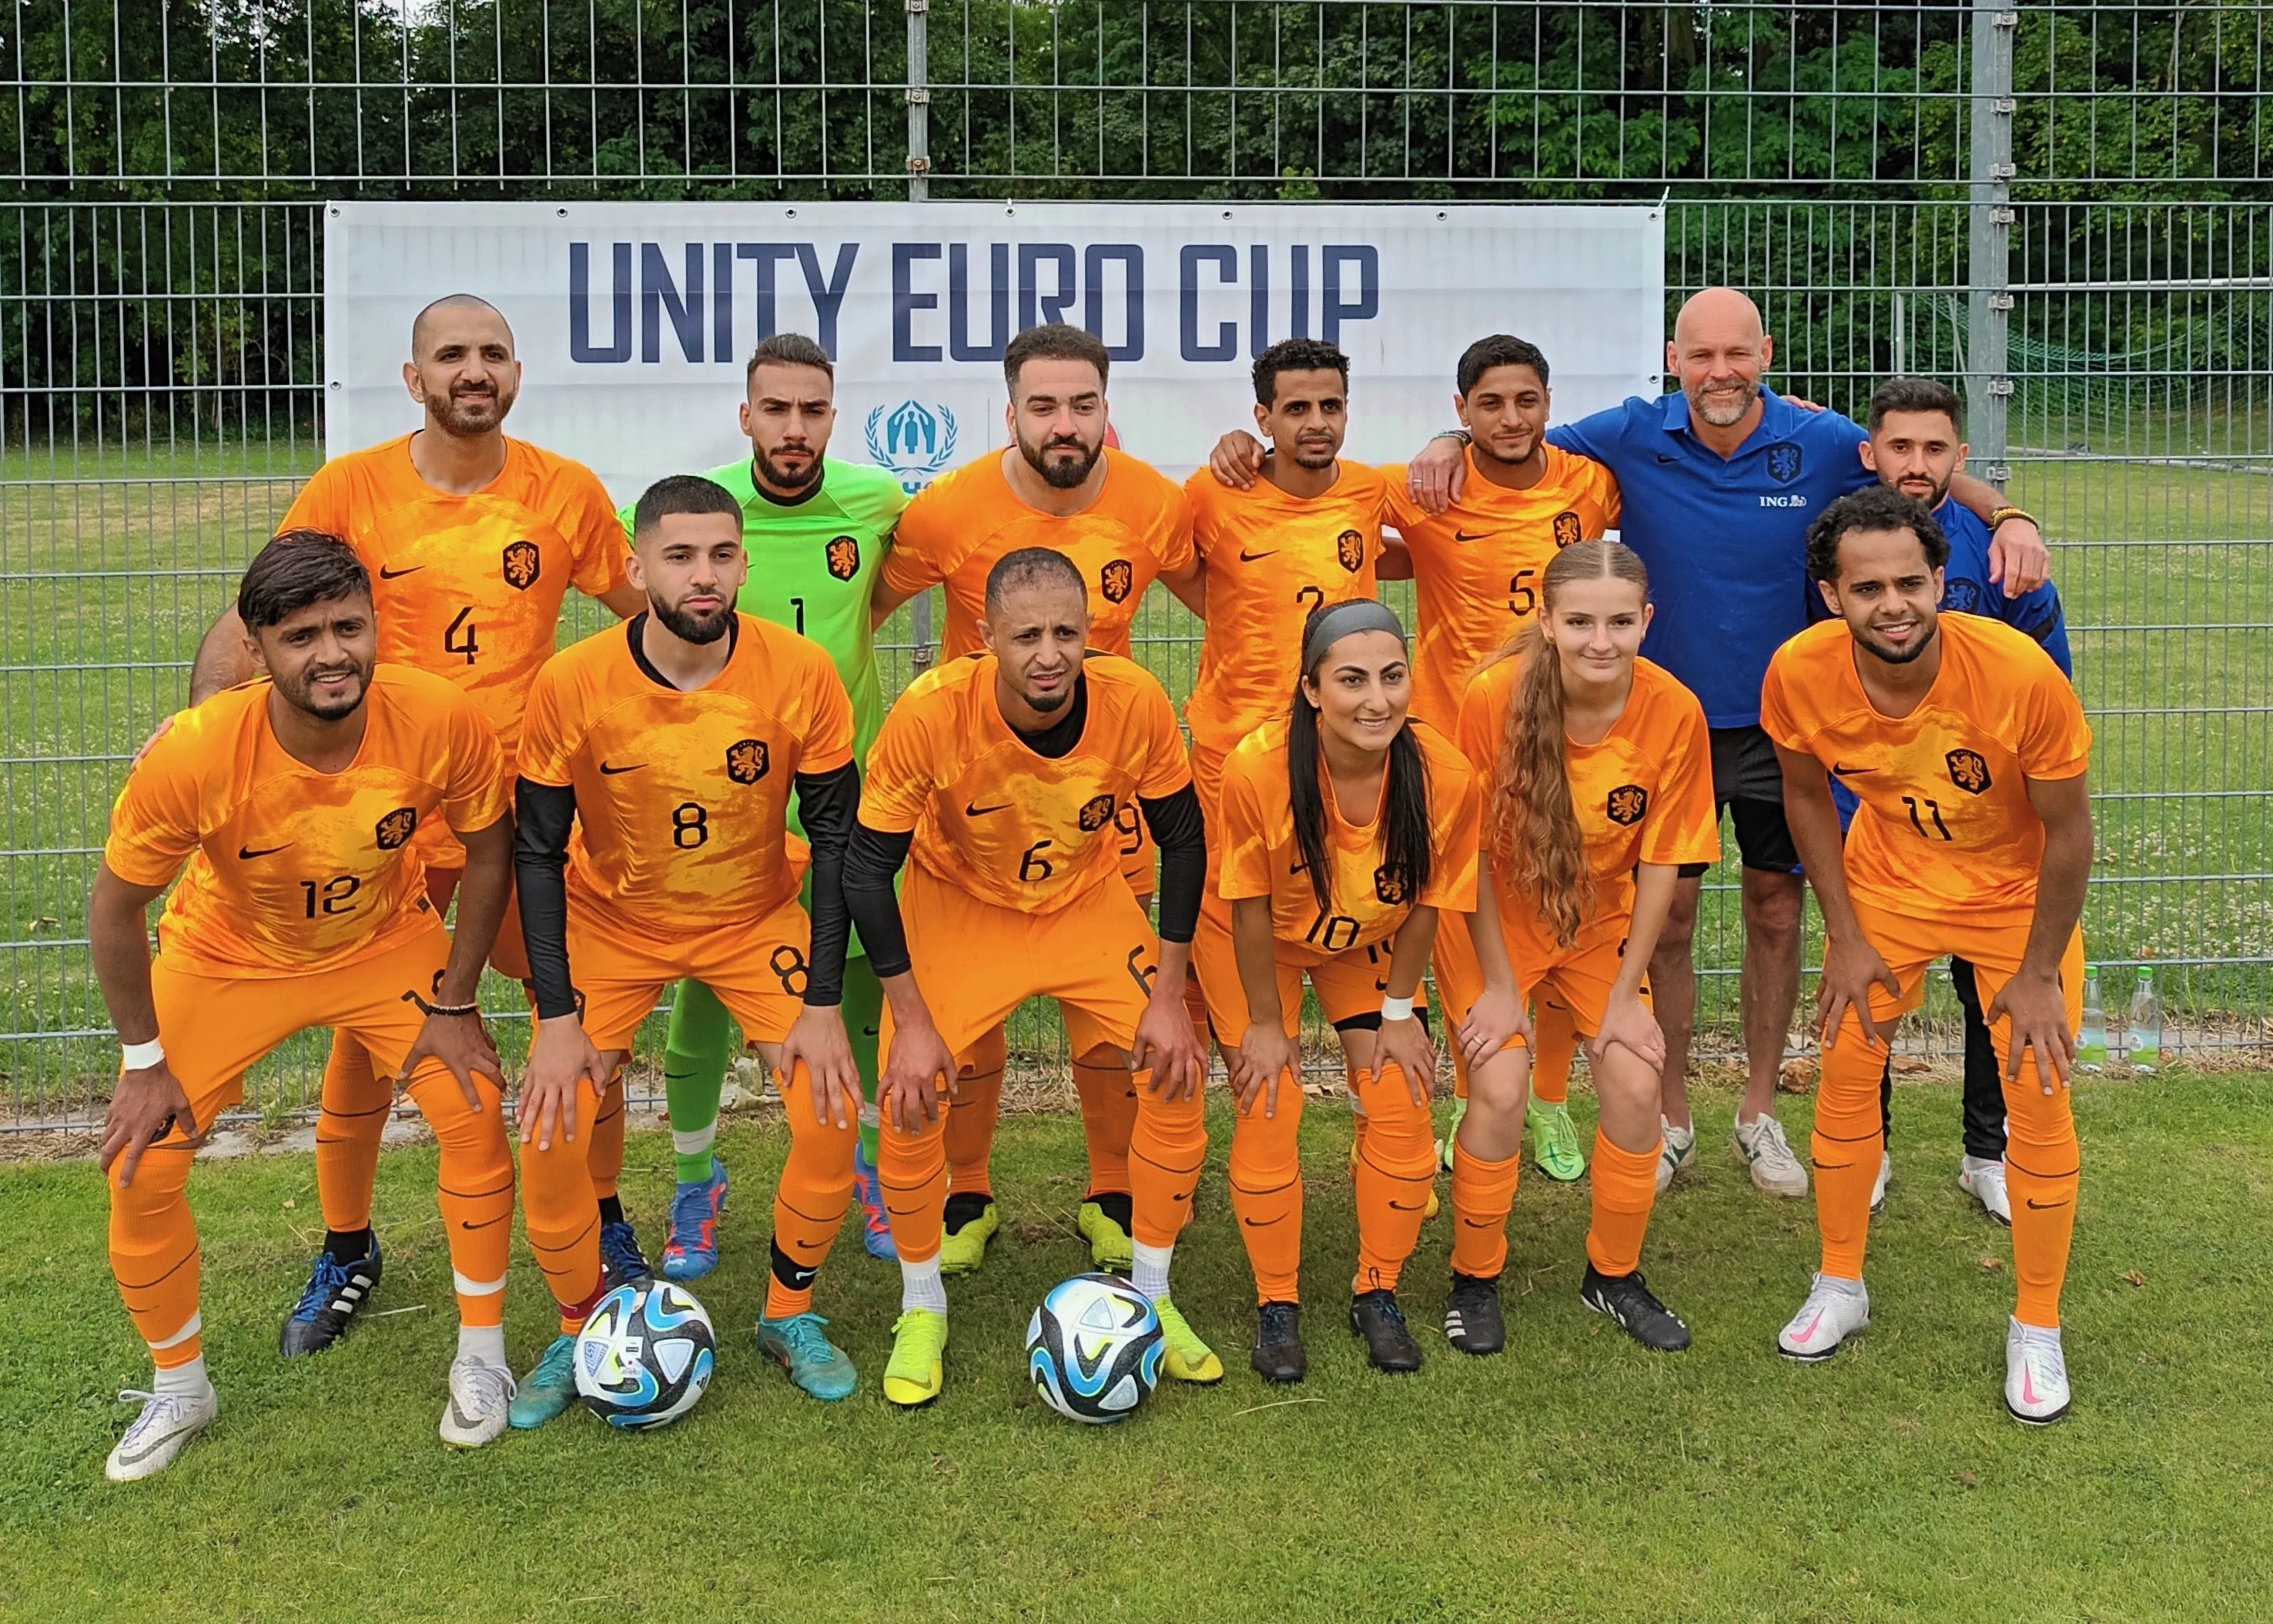 Het Nederlandse team op de EURO Unity Cup